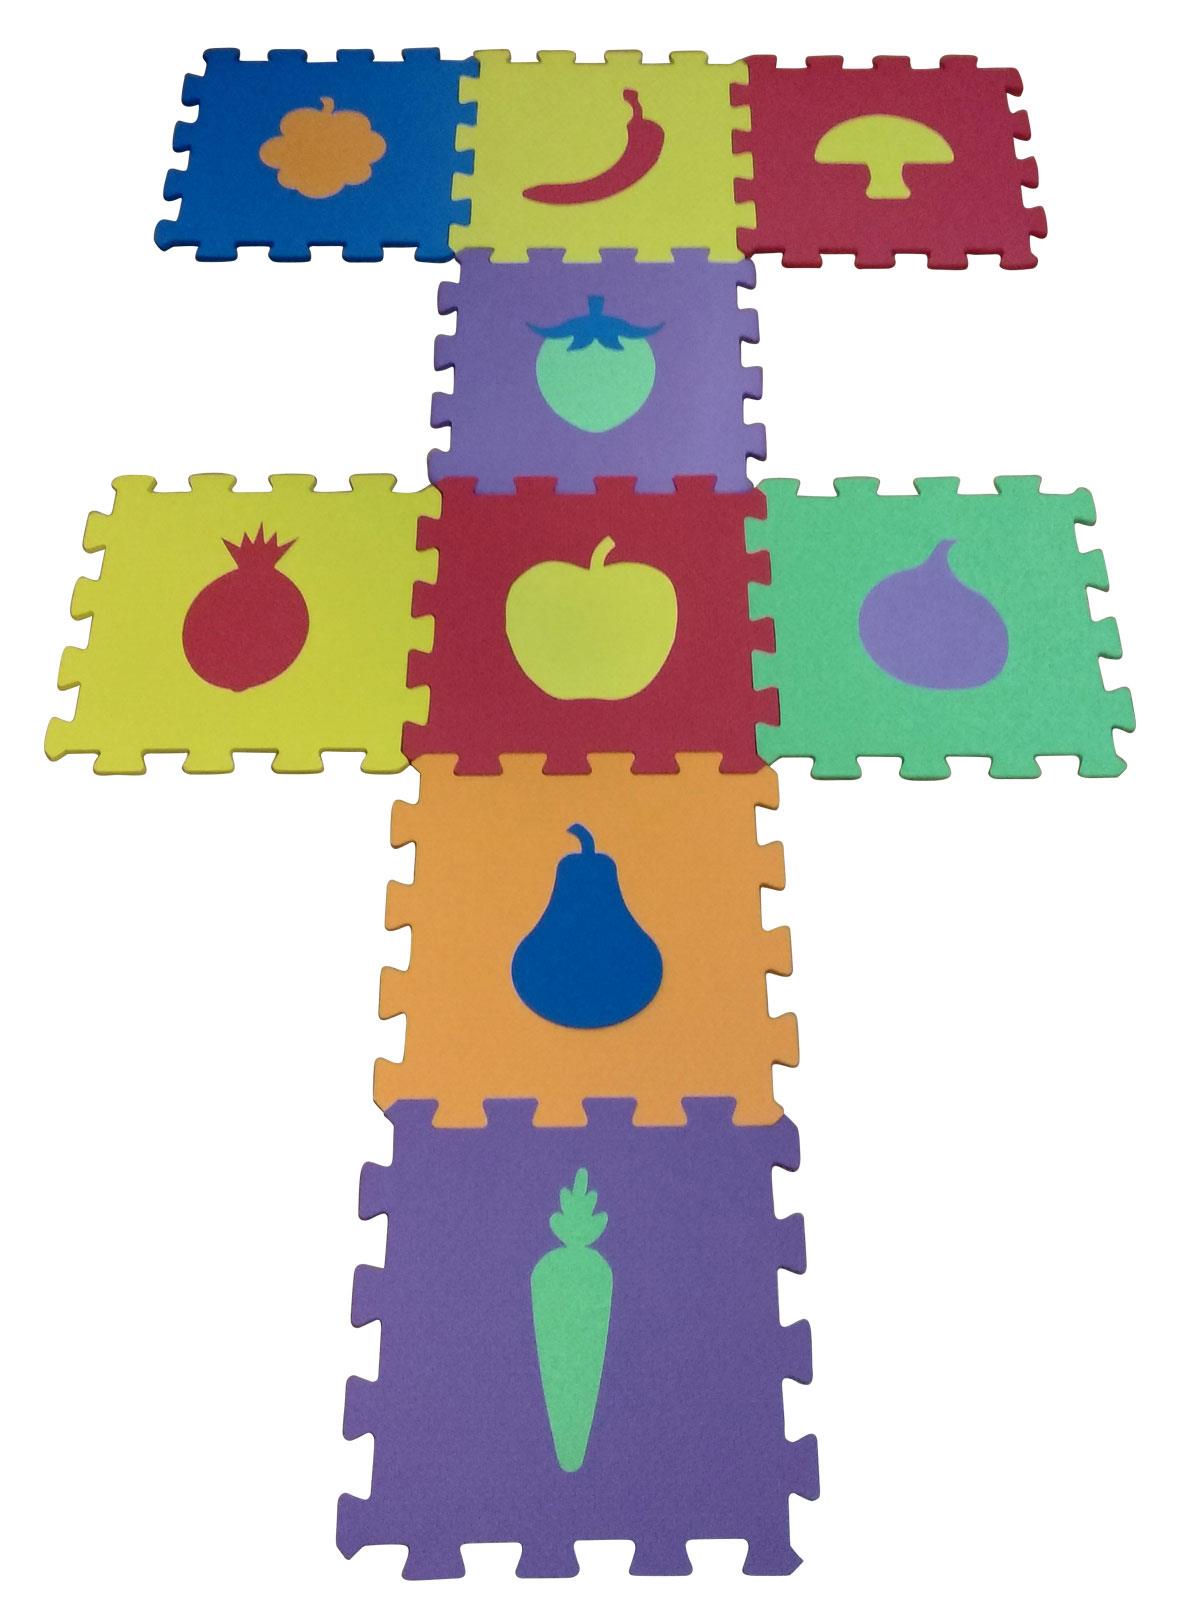 Elfobaby Eva Puzzle Oyun Matı 9 Parça  33cm x 33cm Meyveler Temalı